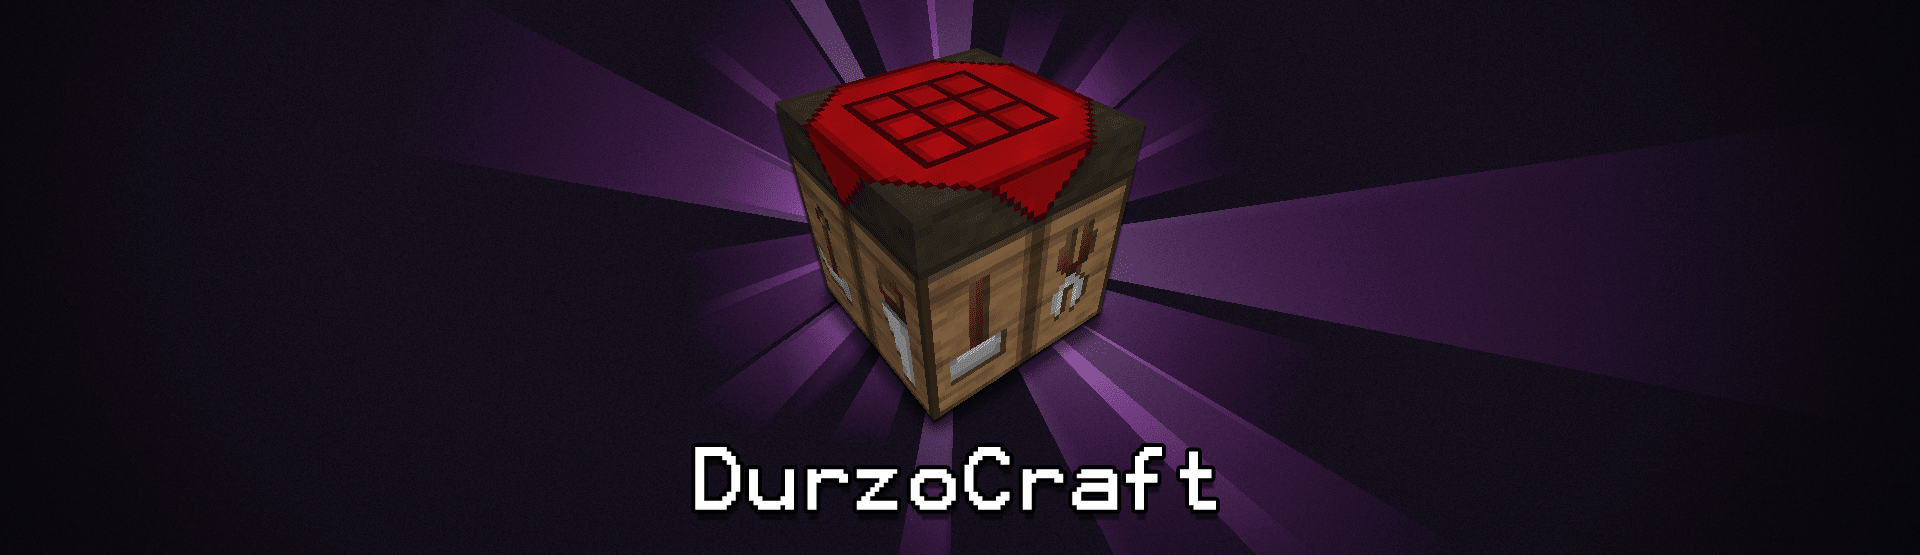 Durzocraft - xm3ZaxI